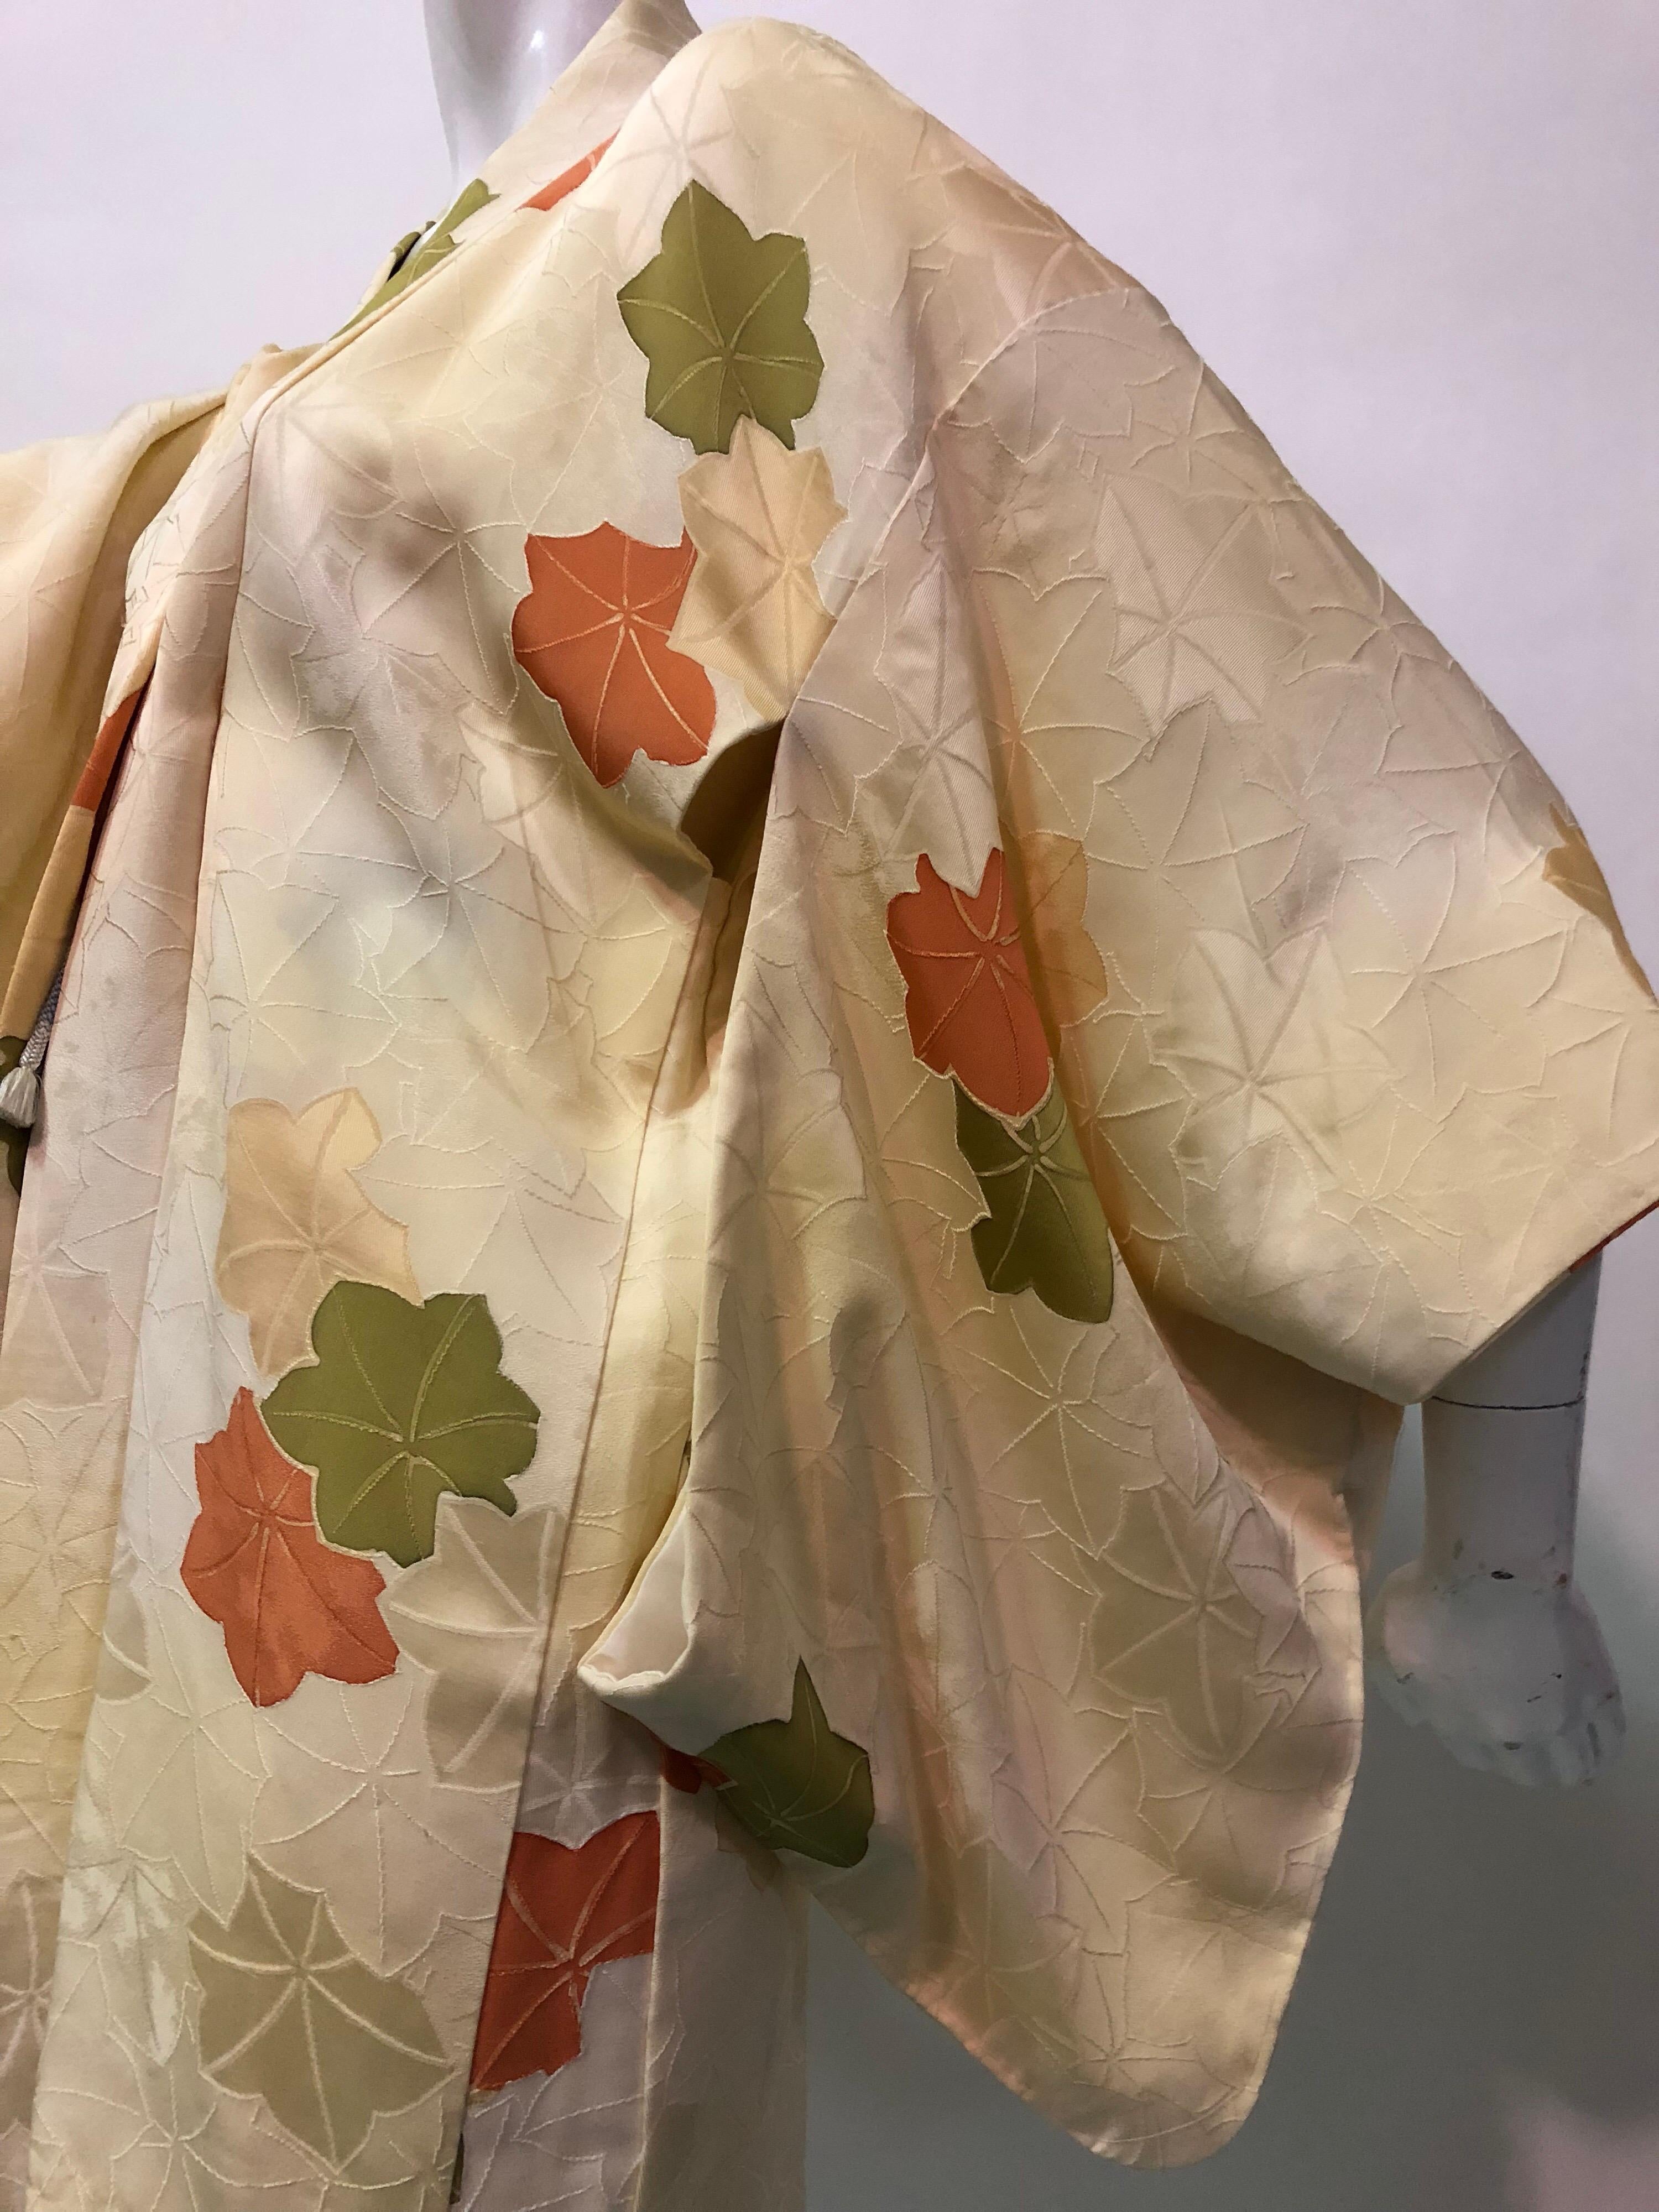 Eine wunderbare Vintage japanische Seide drucken Kimono in einer schweren Creme Seide mit Oliven-und Rost floralen Muster im gesamten. Traditioneller Kimono-Schnitt mit dramatischen Ärmeln und Bindeverschluss vorne. 
Wunderbarer Zustand und